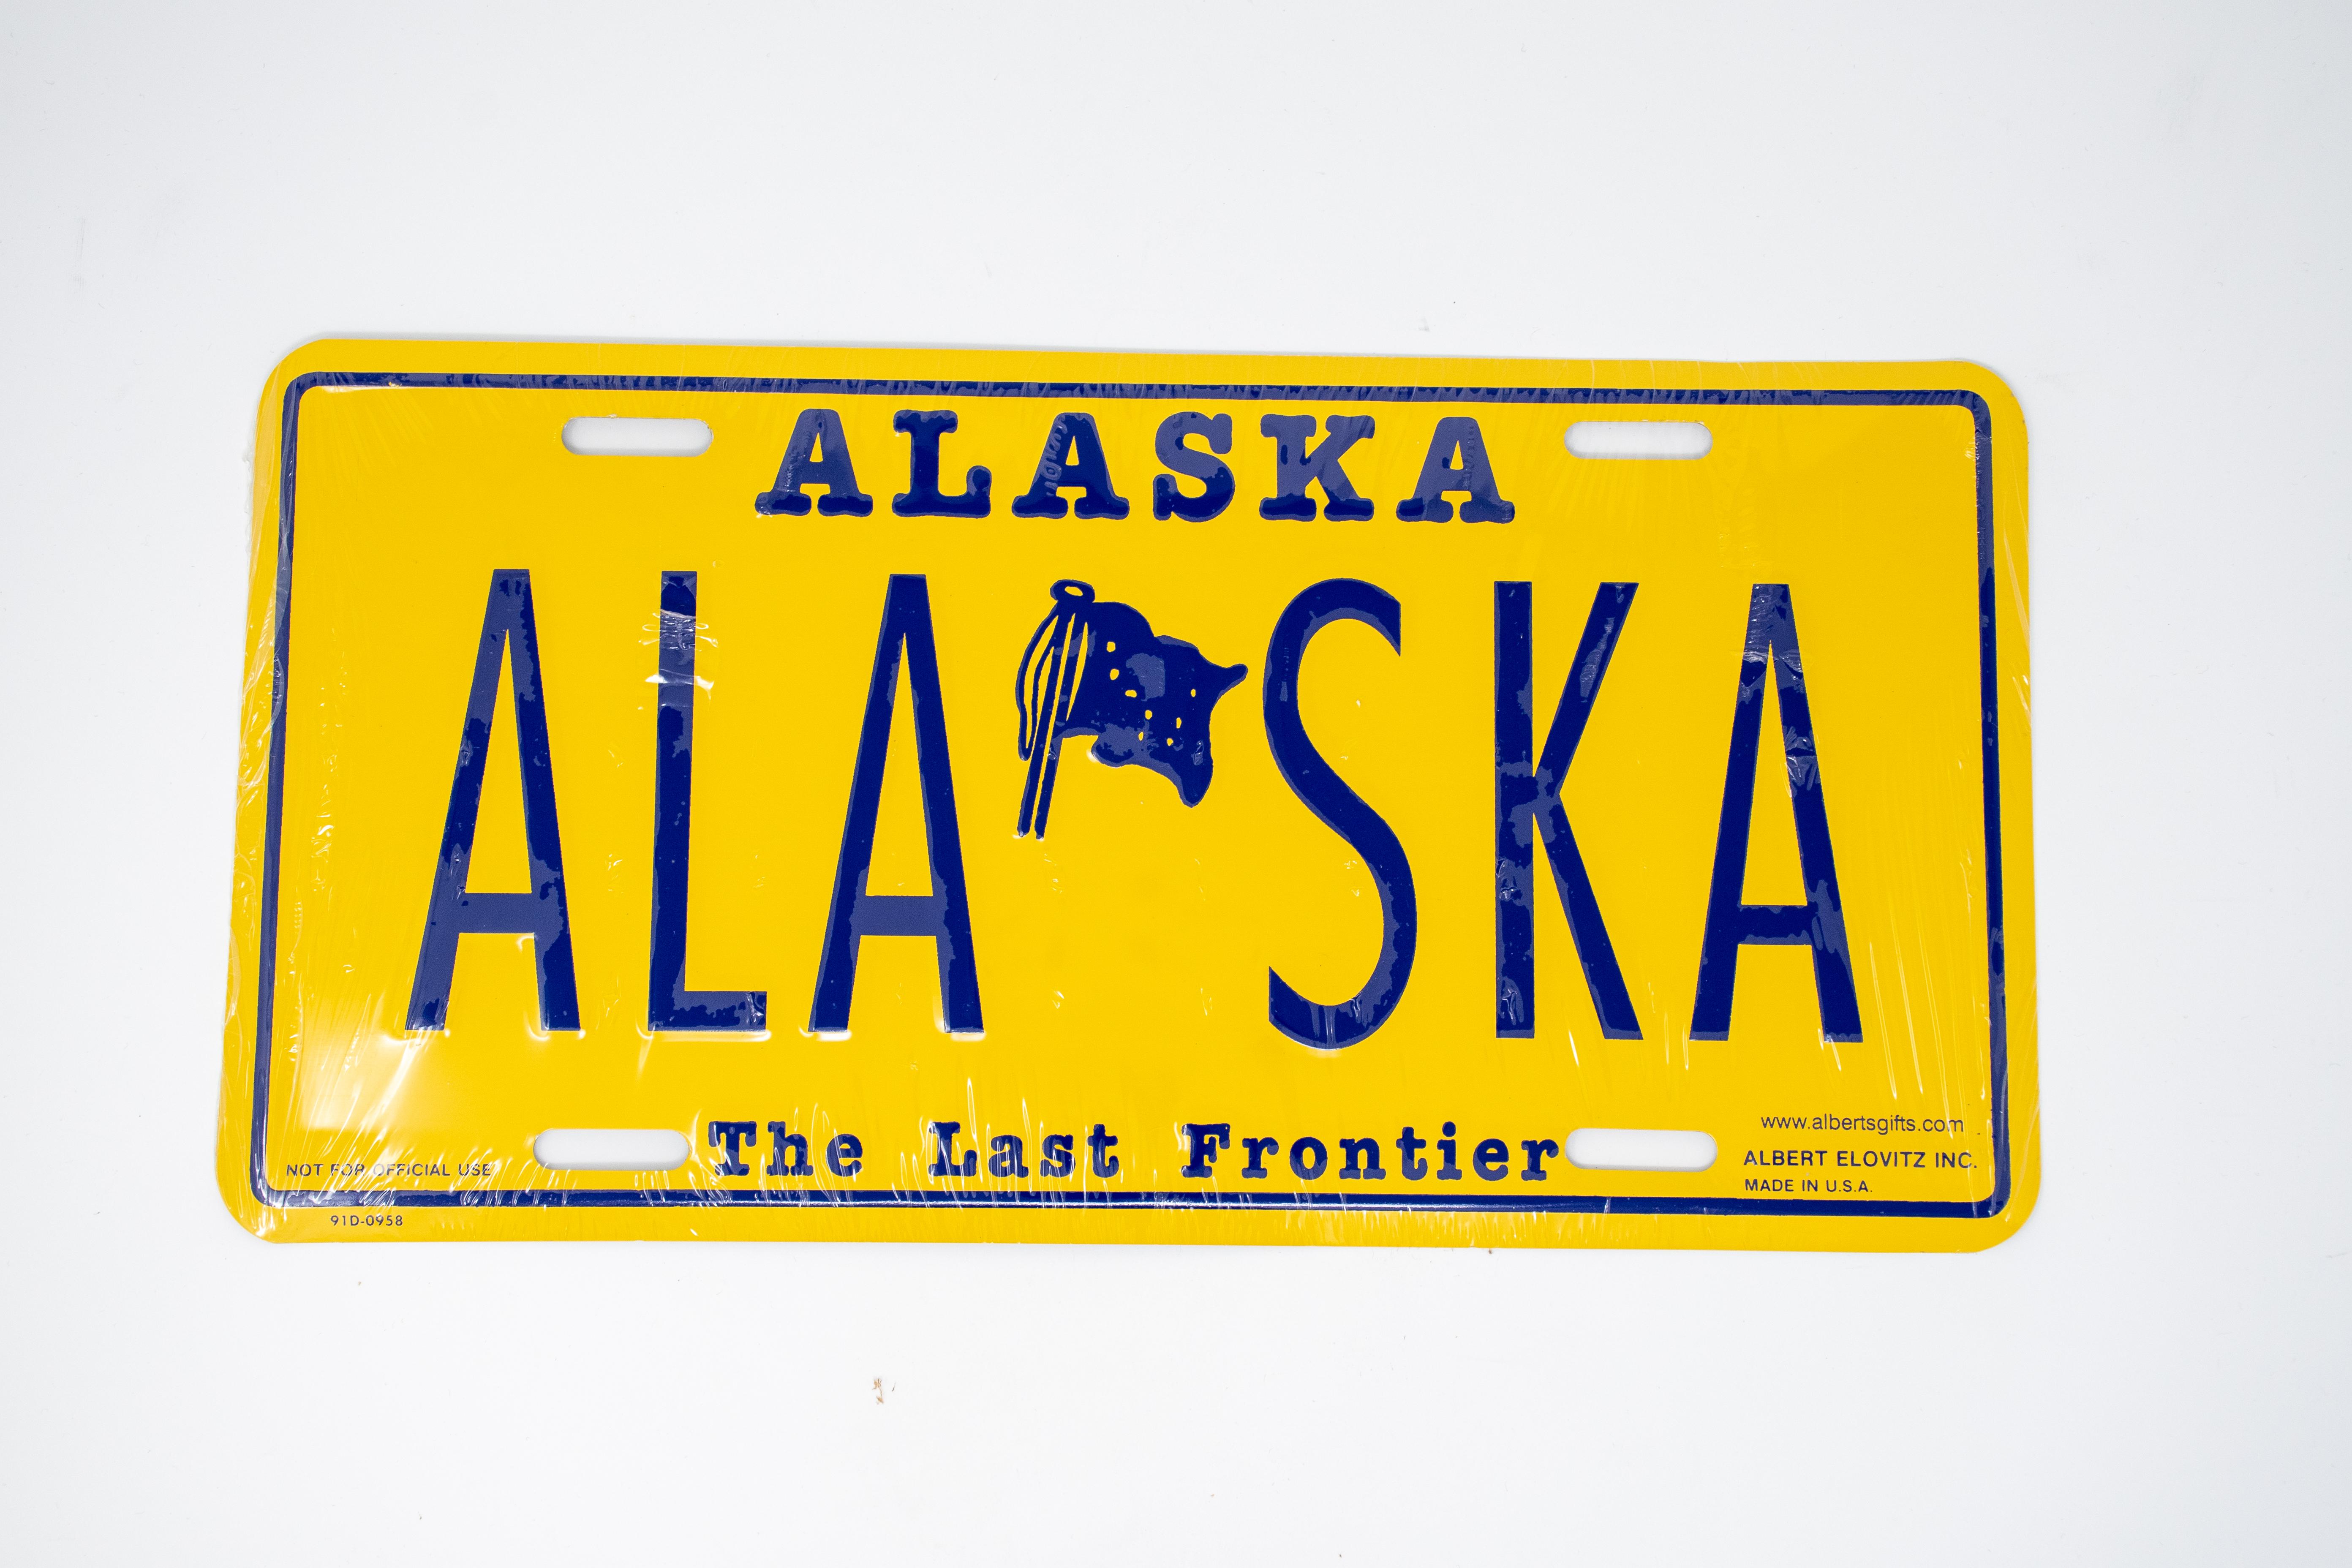  Ak License Plate